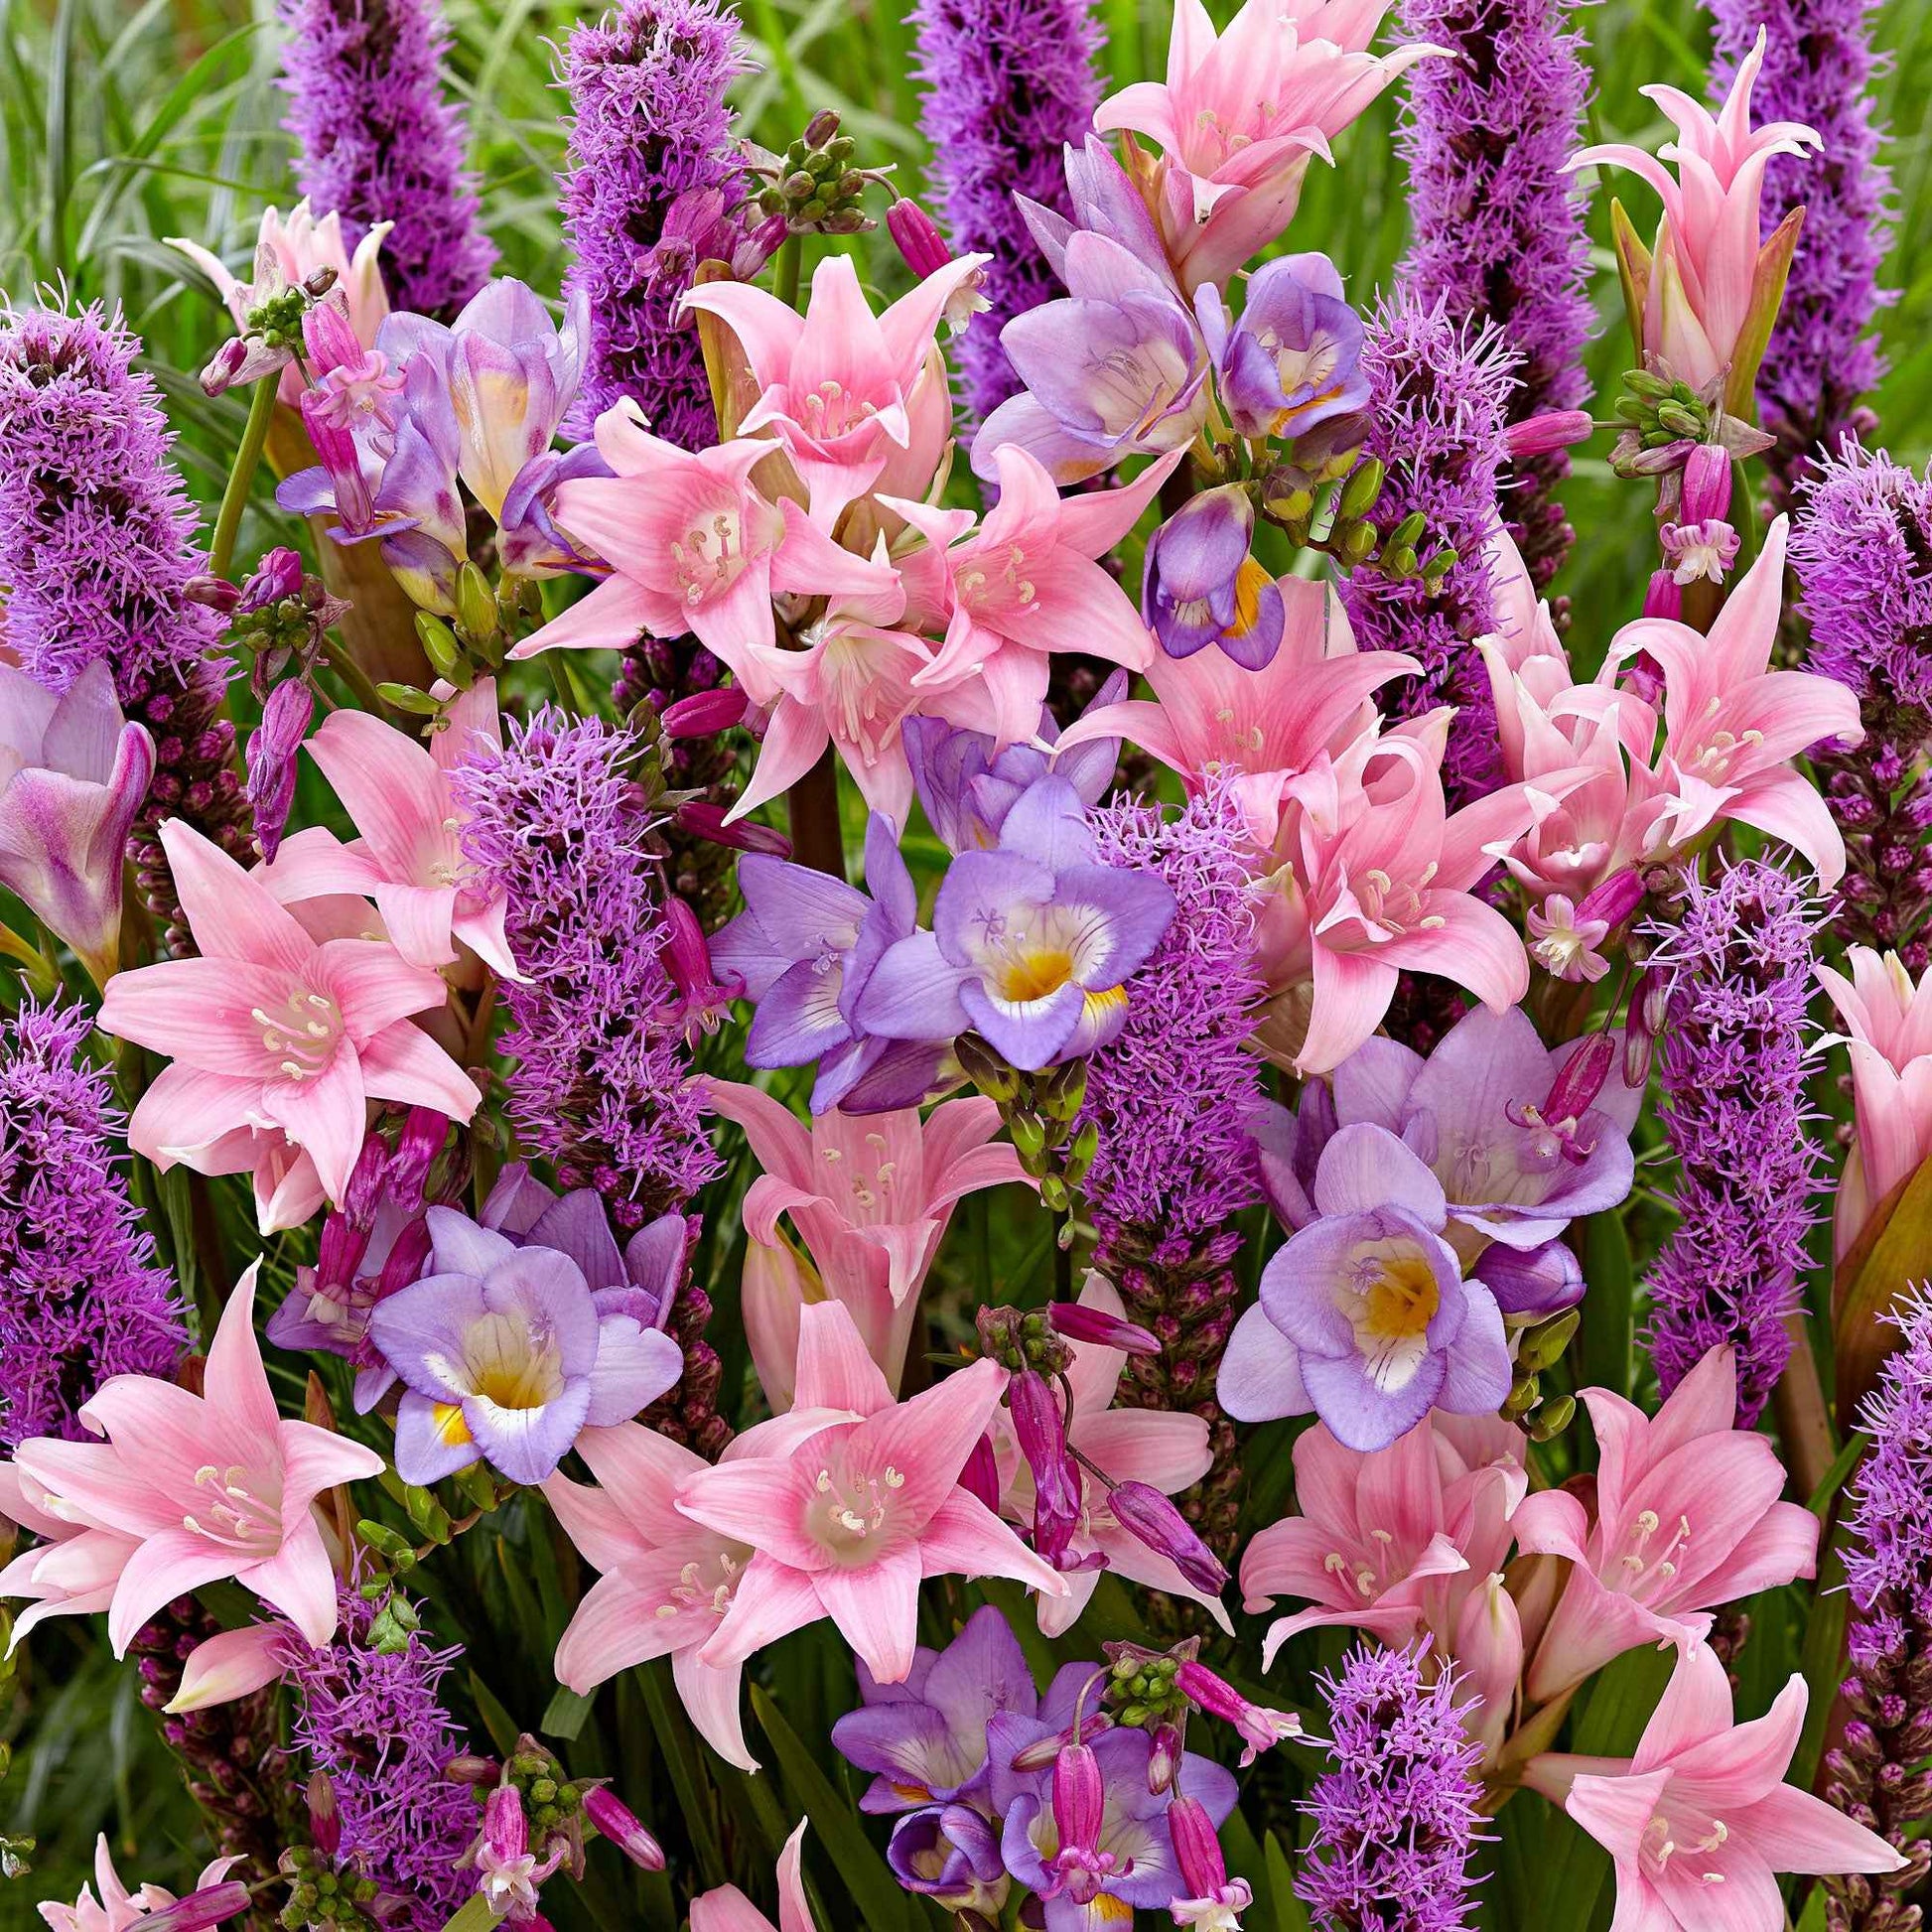 35x Blumenzwiebeln - Mischung 'Fragrant Pollinator Paradise' lila-rosa-blau - Bienen- und schmetterlingsanziehende Blumenzwiebeln